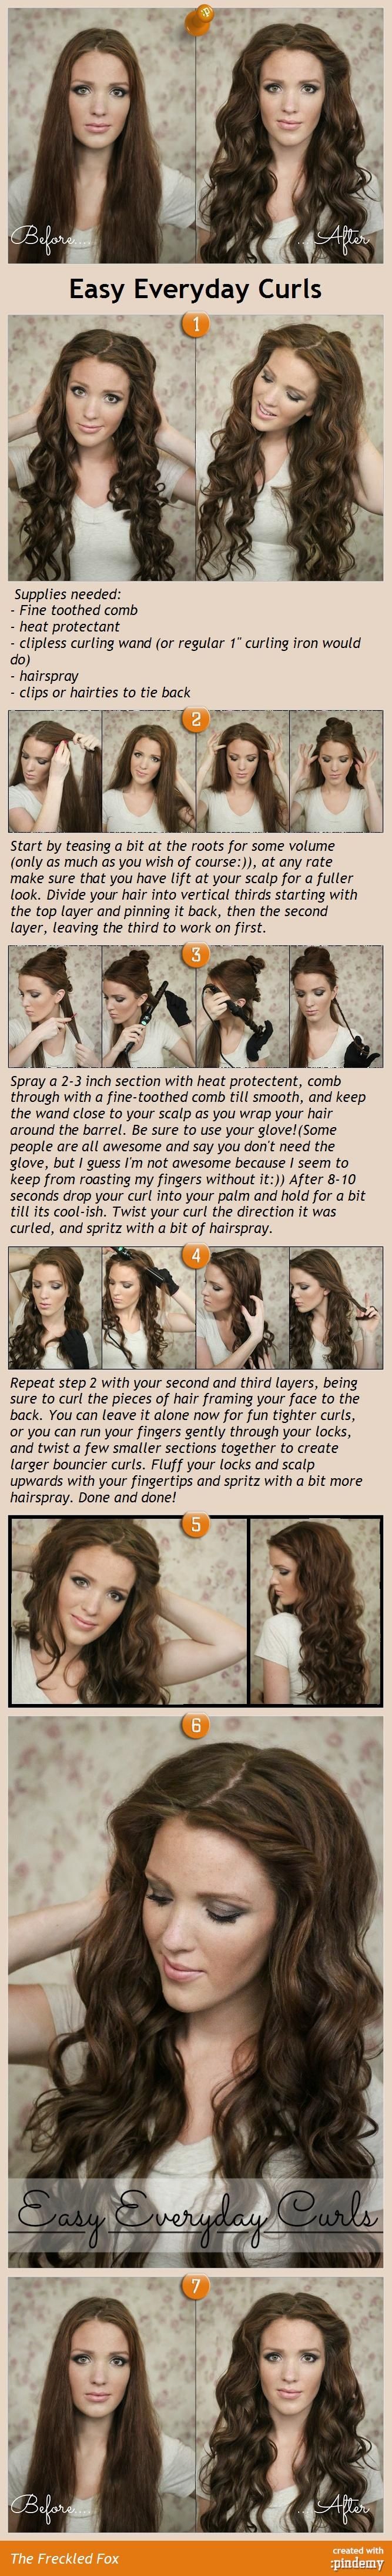 easy everyday curls hair tutorial